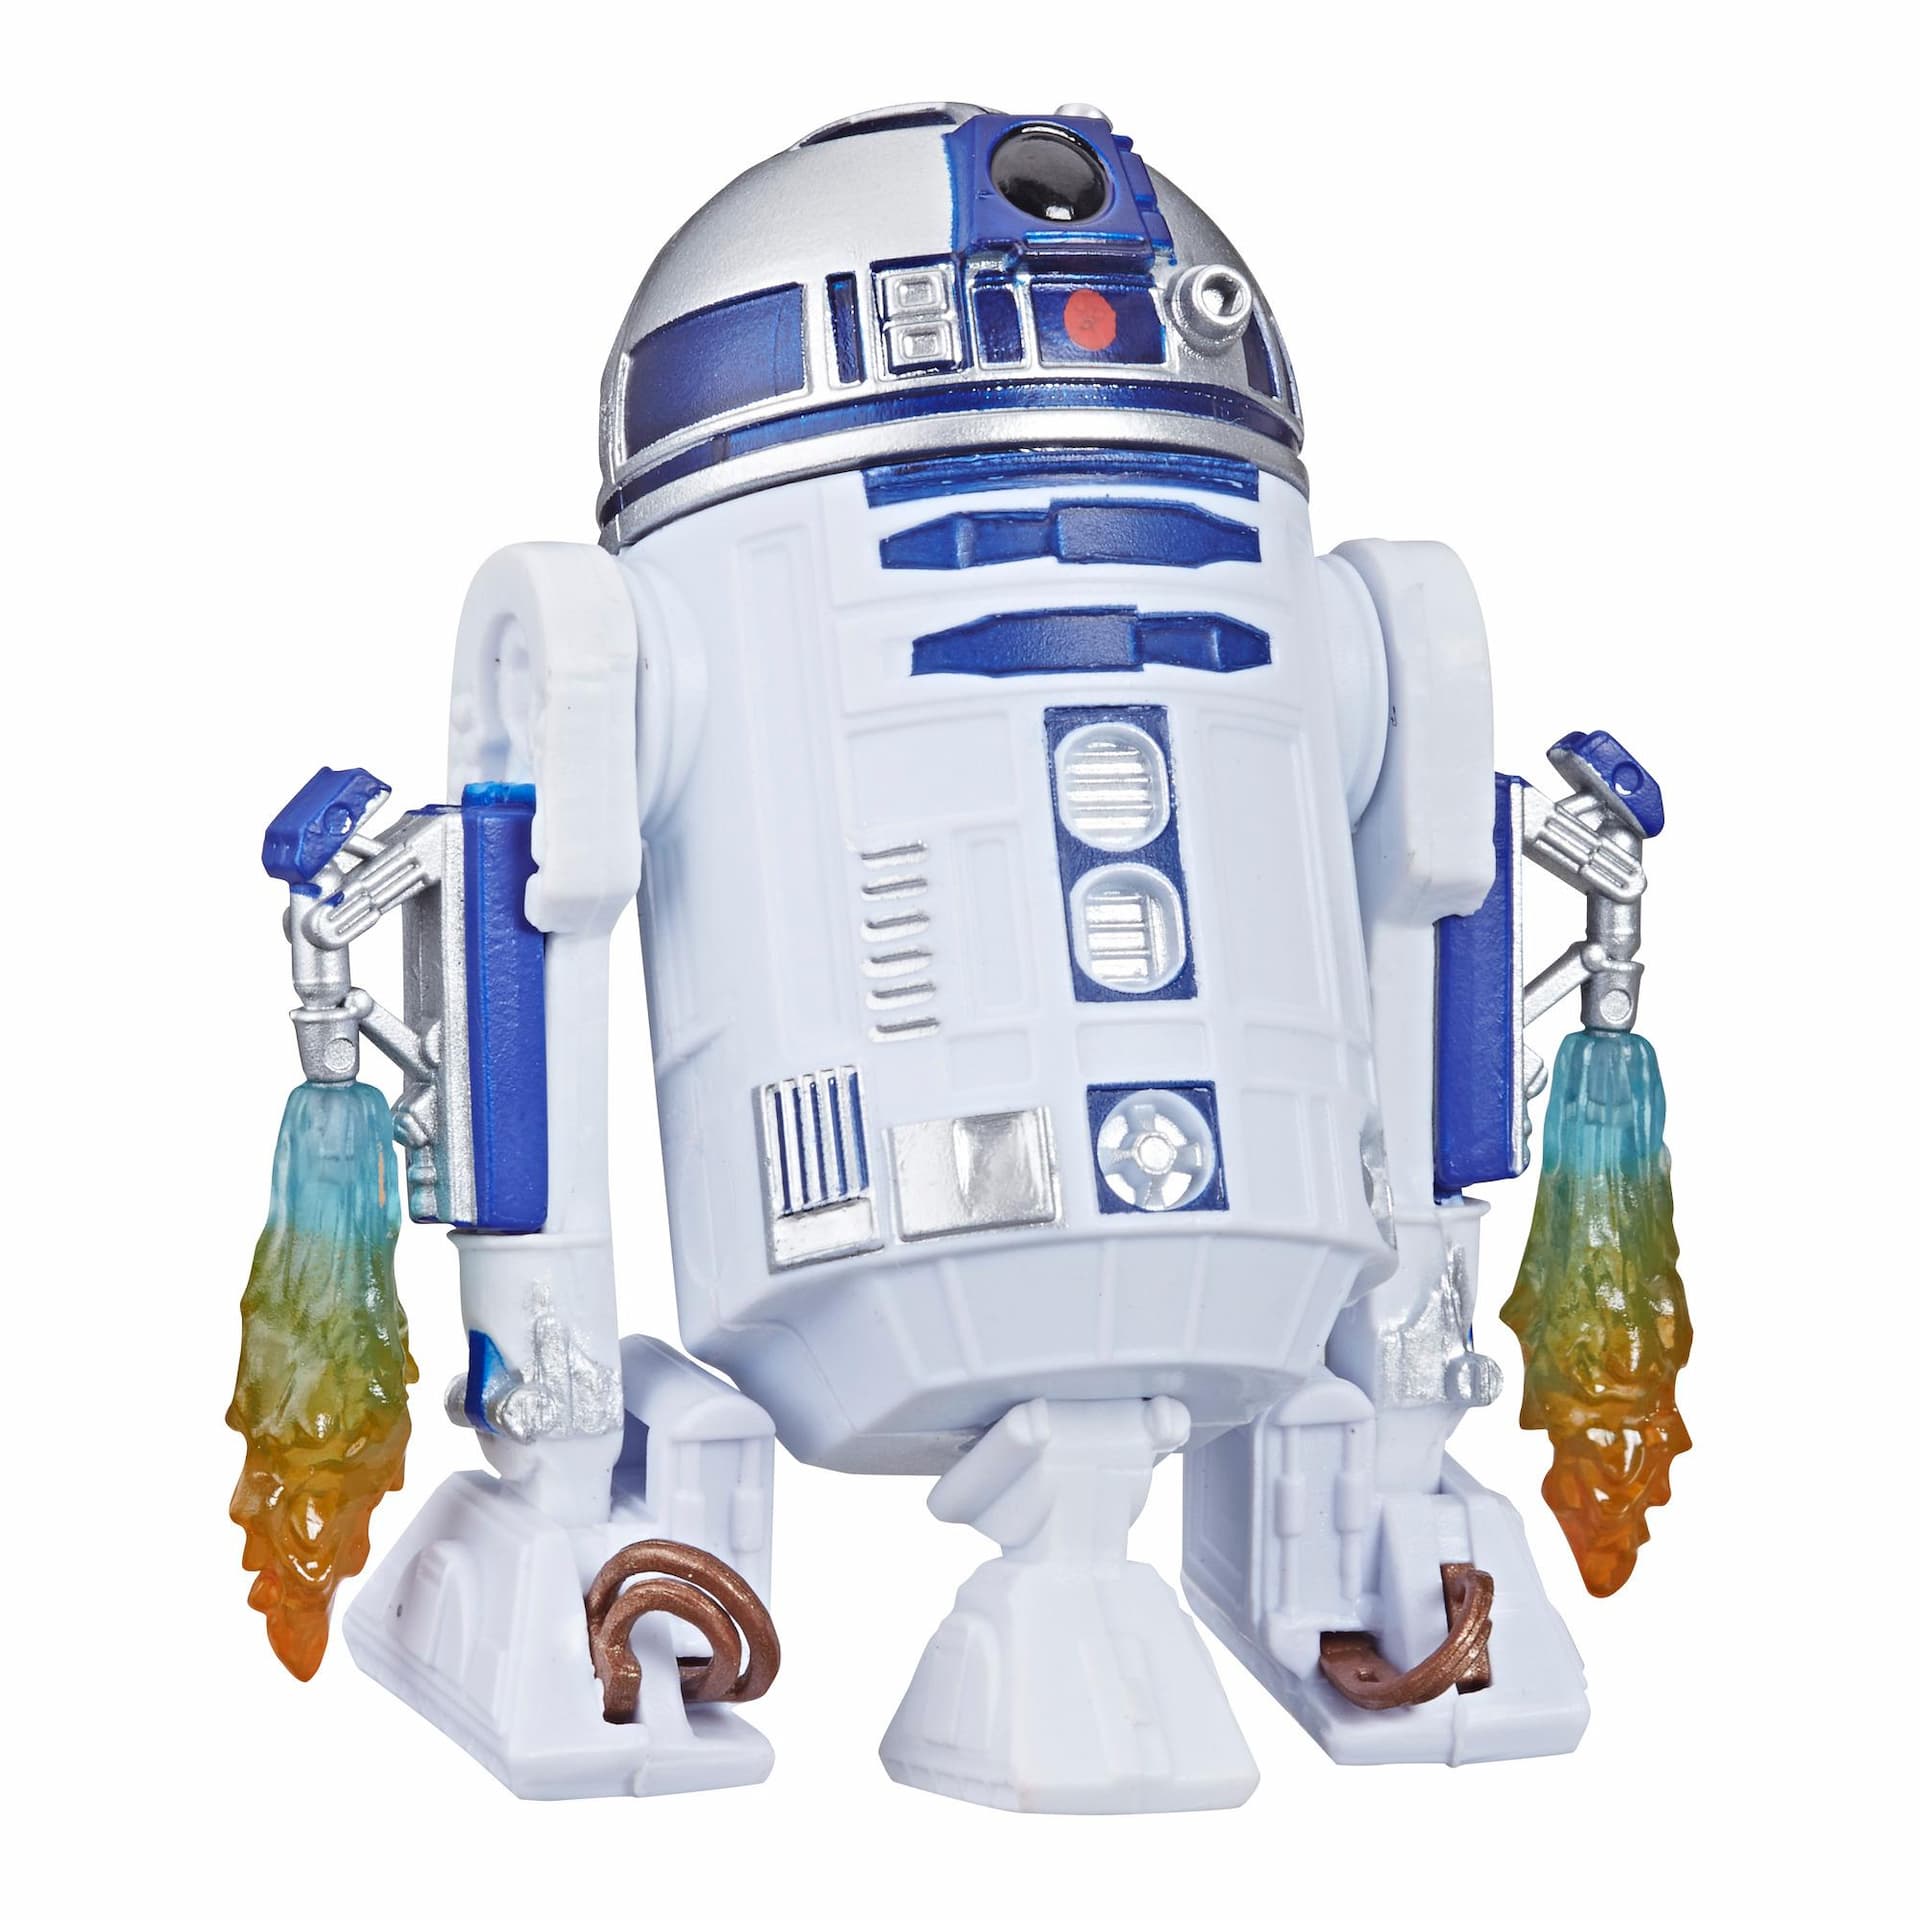 Star Wars Galaxy of Adventures - Figura de R2-D2 y minihistorieta